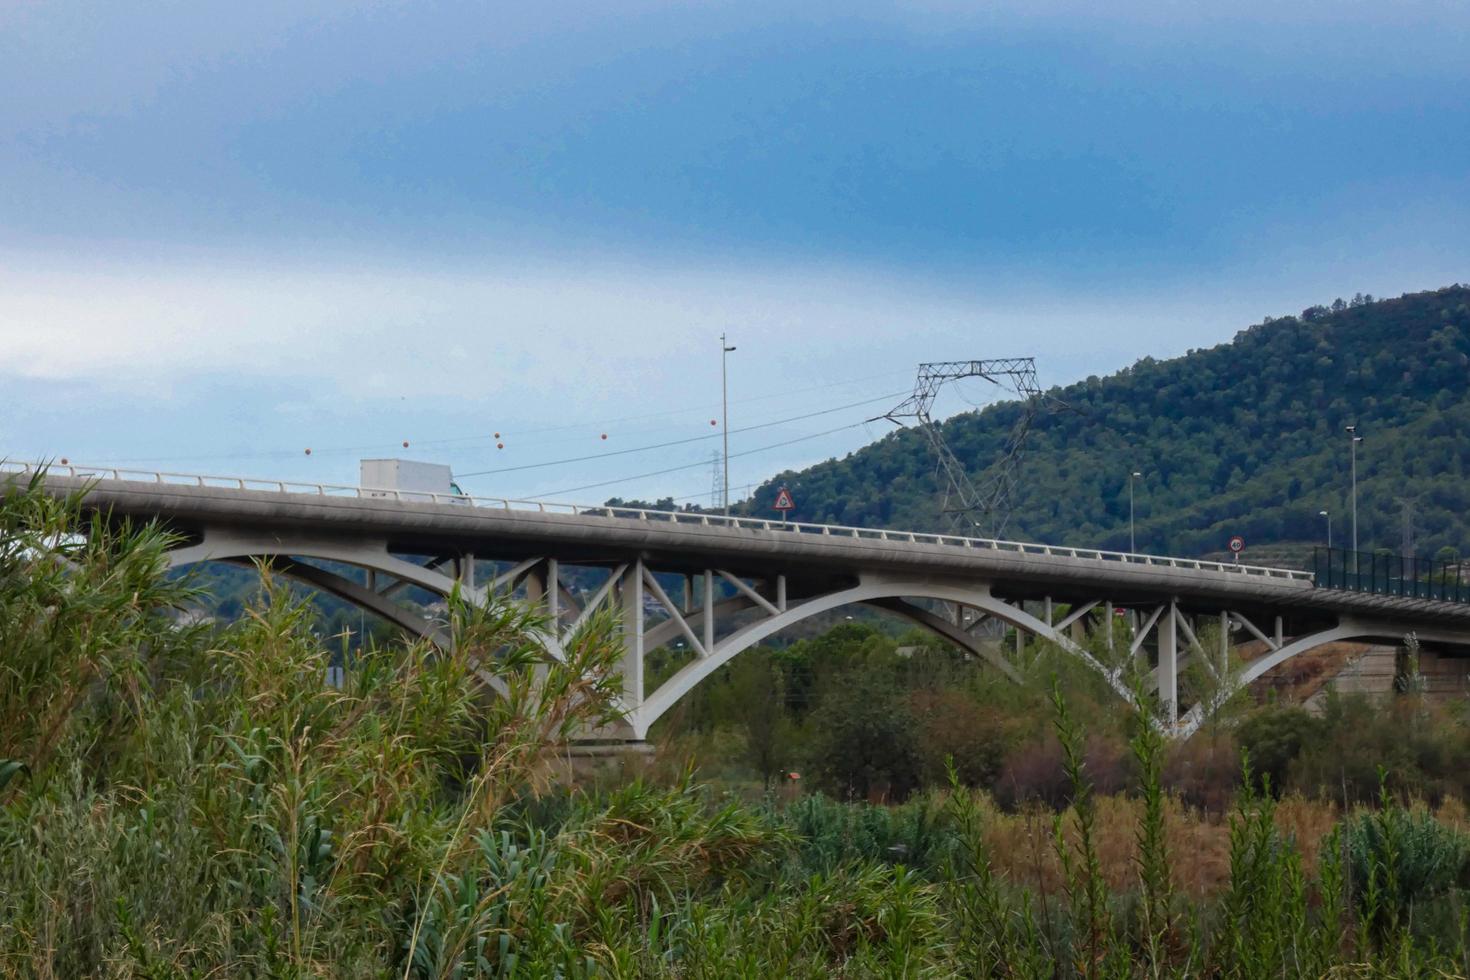 ponte moderna sobre um rio por onde passam grandes veículos e turistas. foto